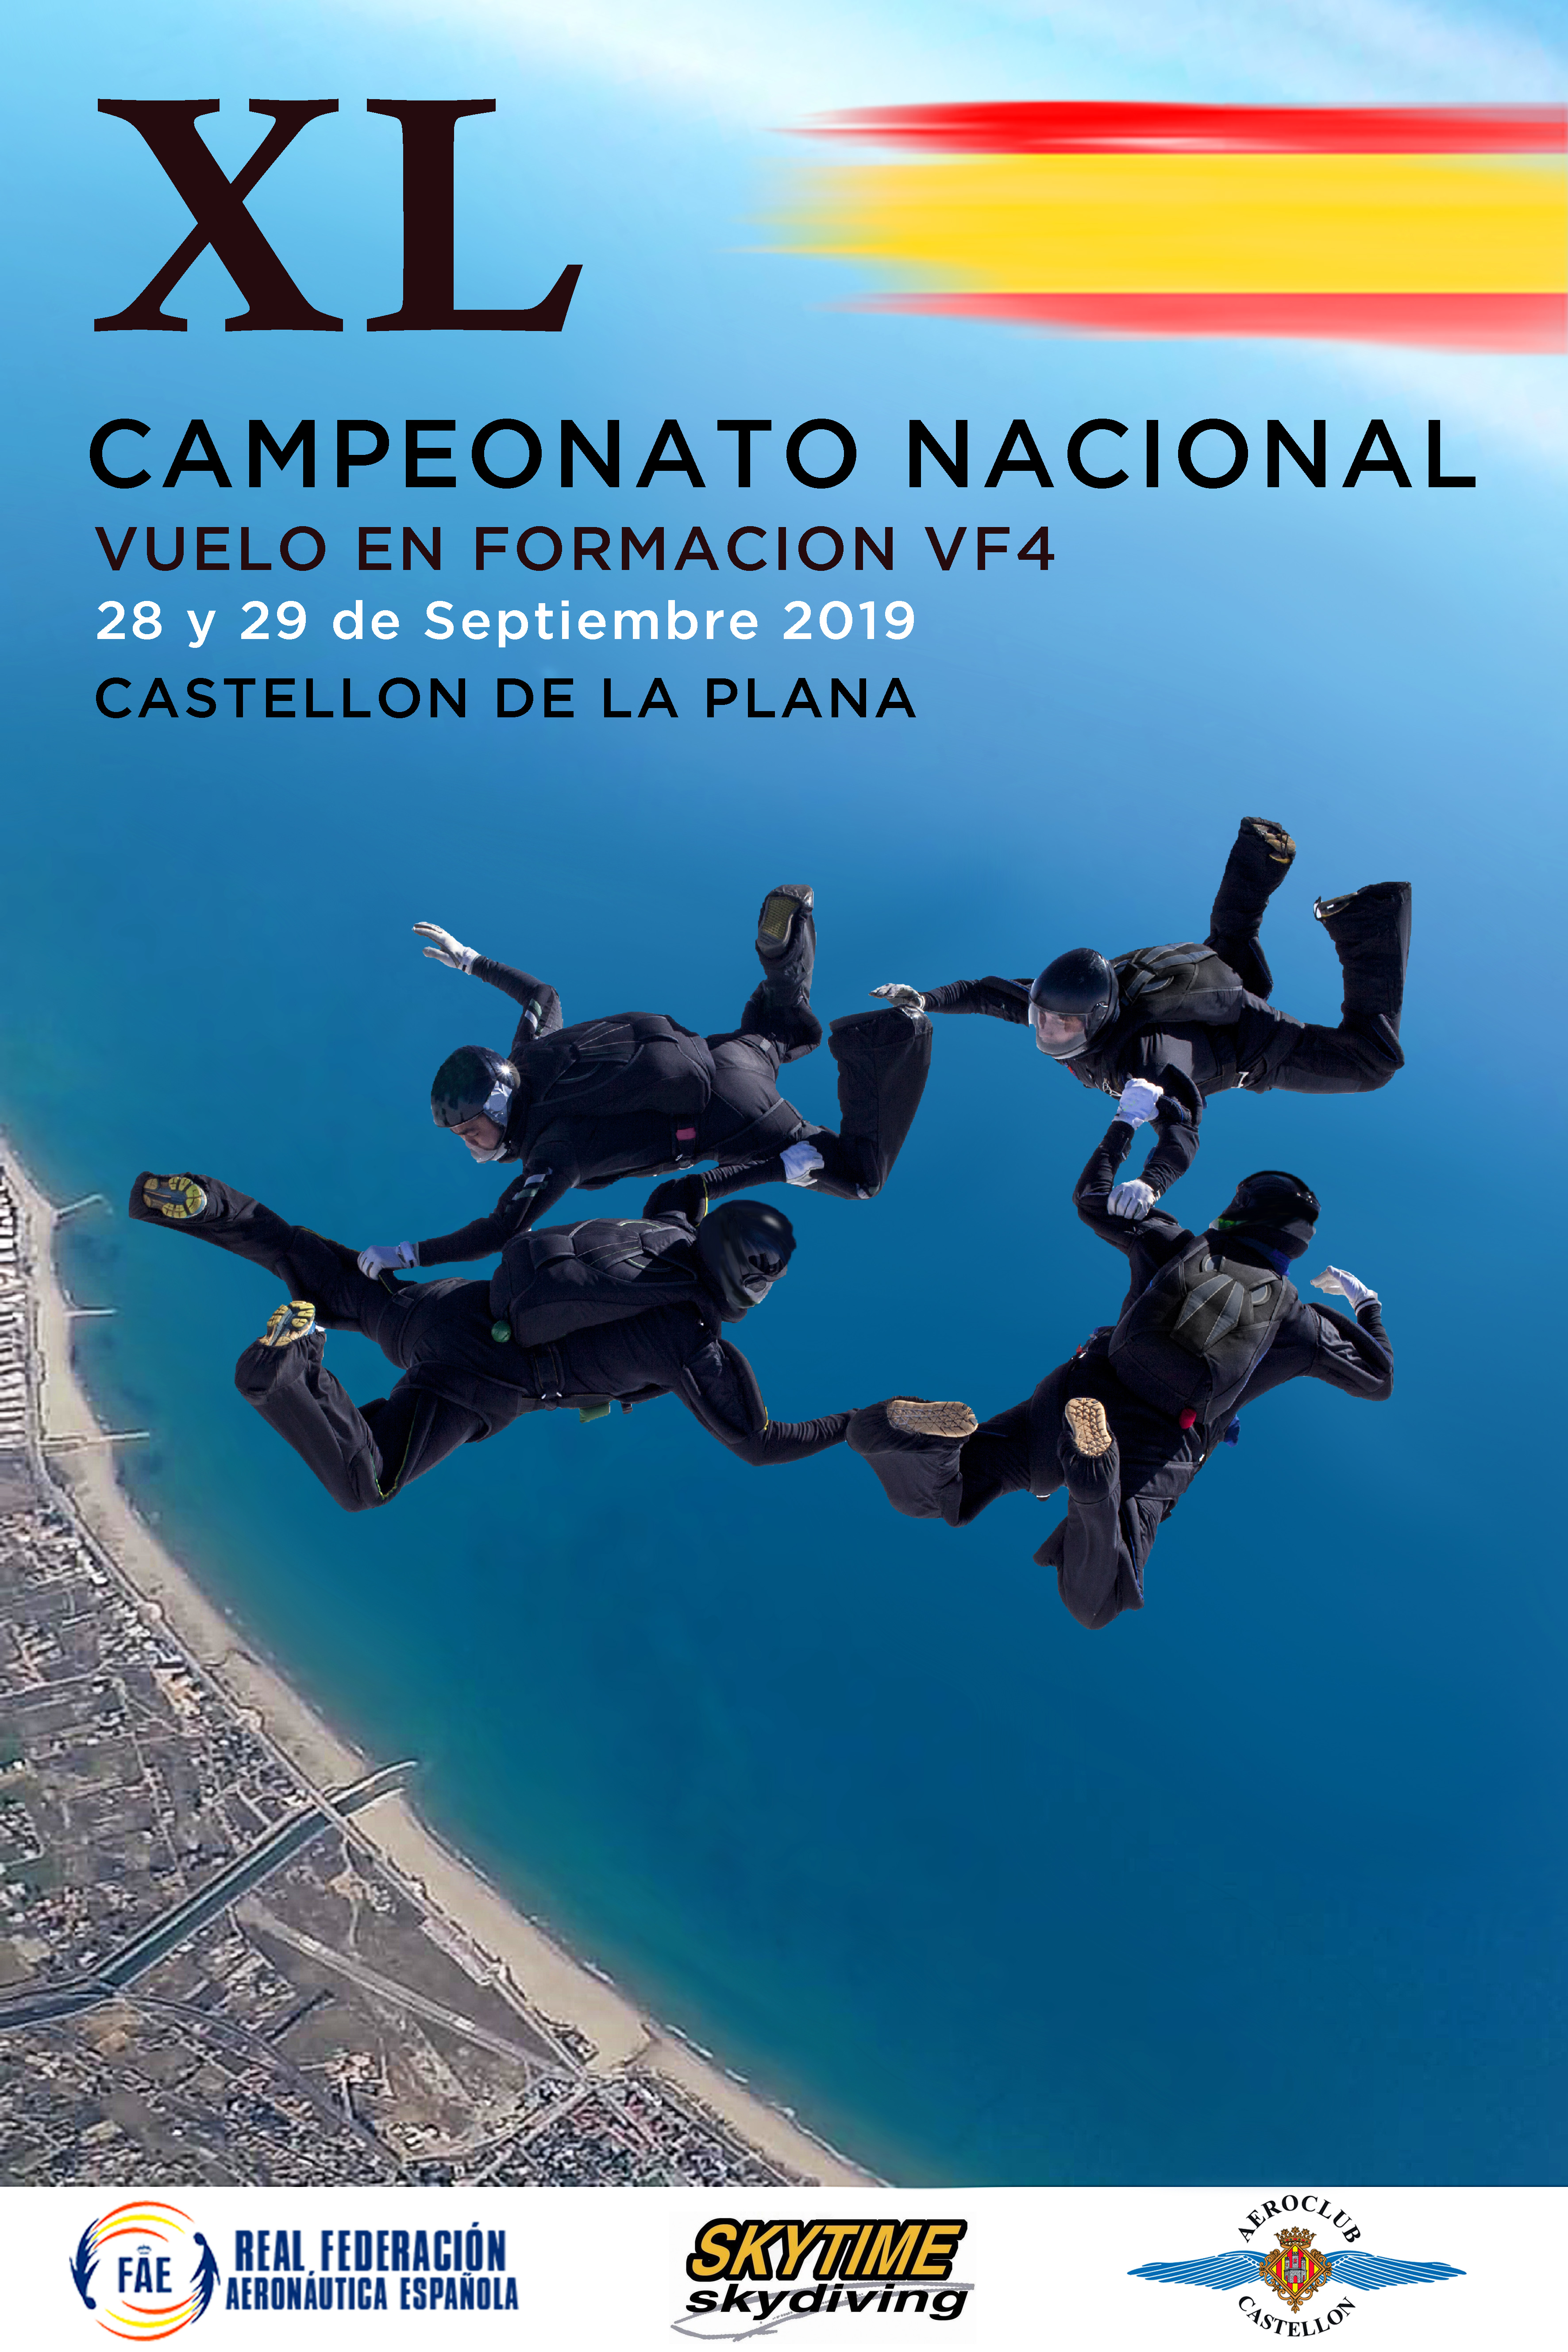 XL Campeonato Nacional de Paracaidismo